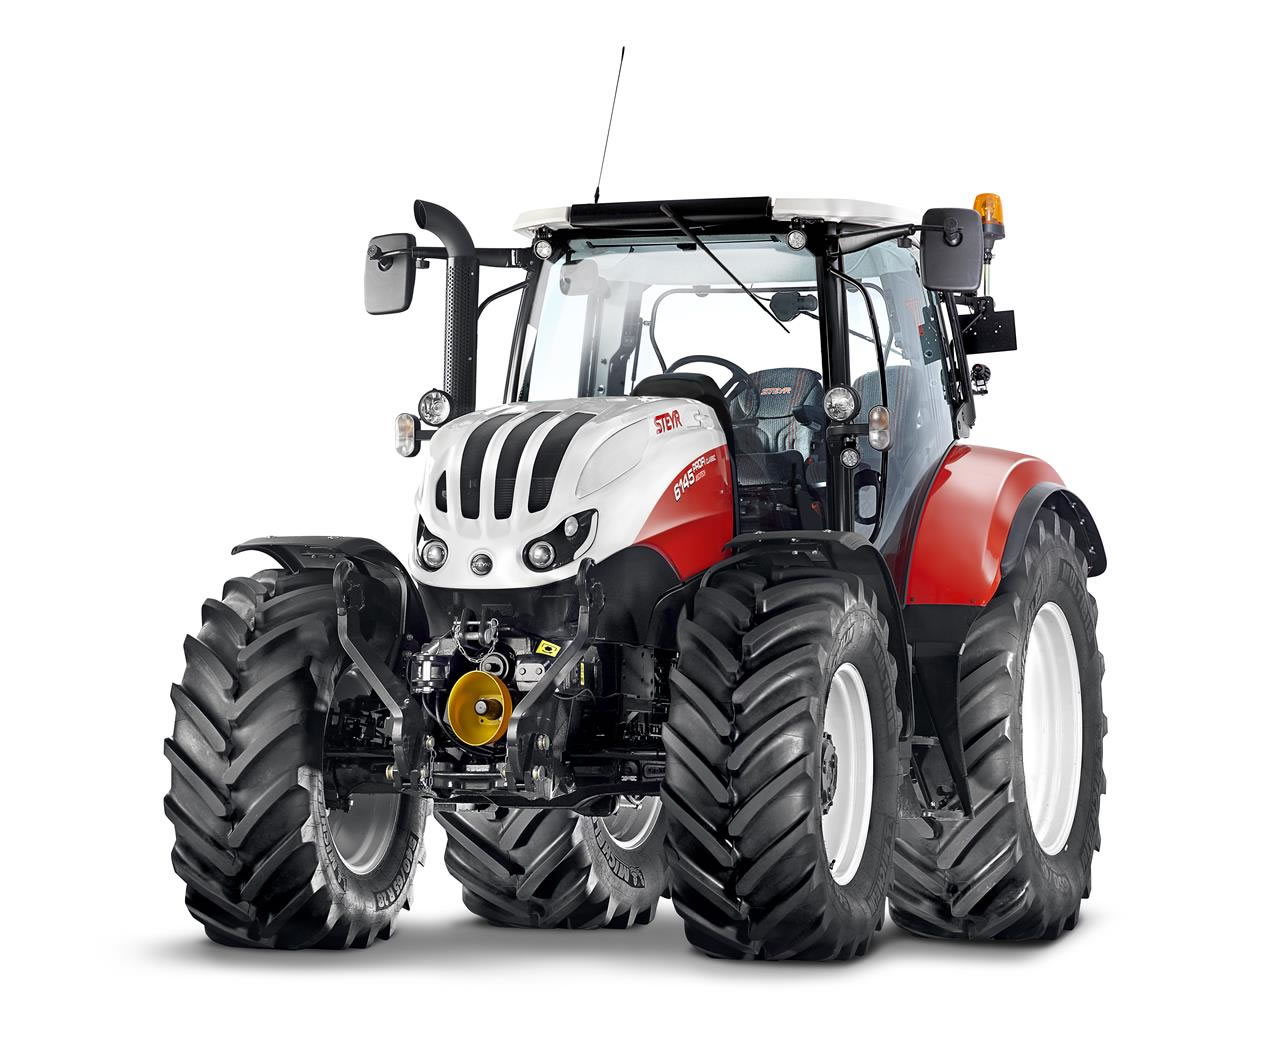 ... home prodajni program traktorji traktorji steyr steyr profi classic